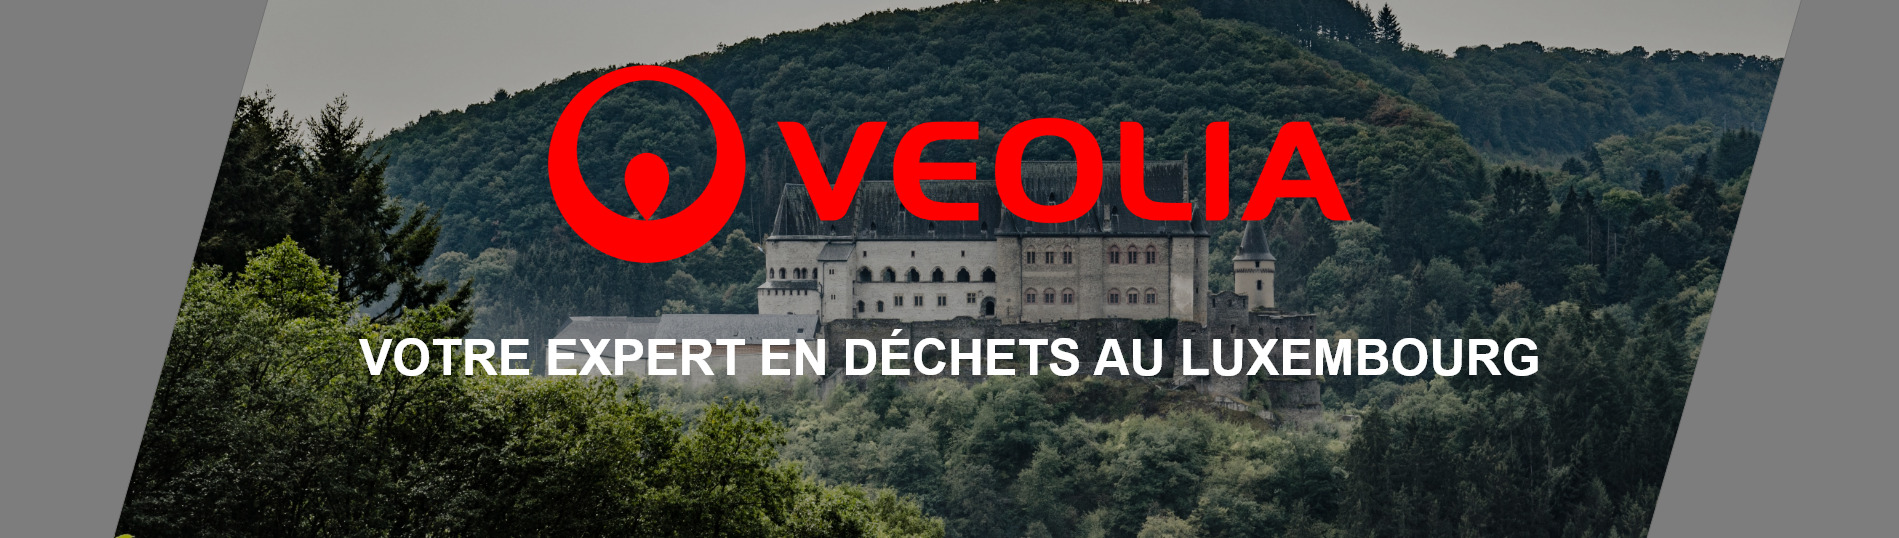 Bannière - Un conteneur pour vos déchets au Luxembourg | Veolia Belgique